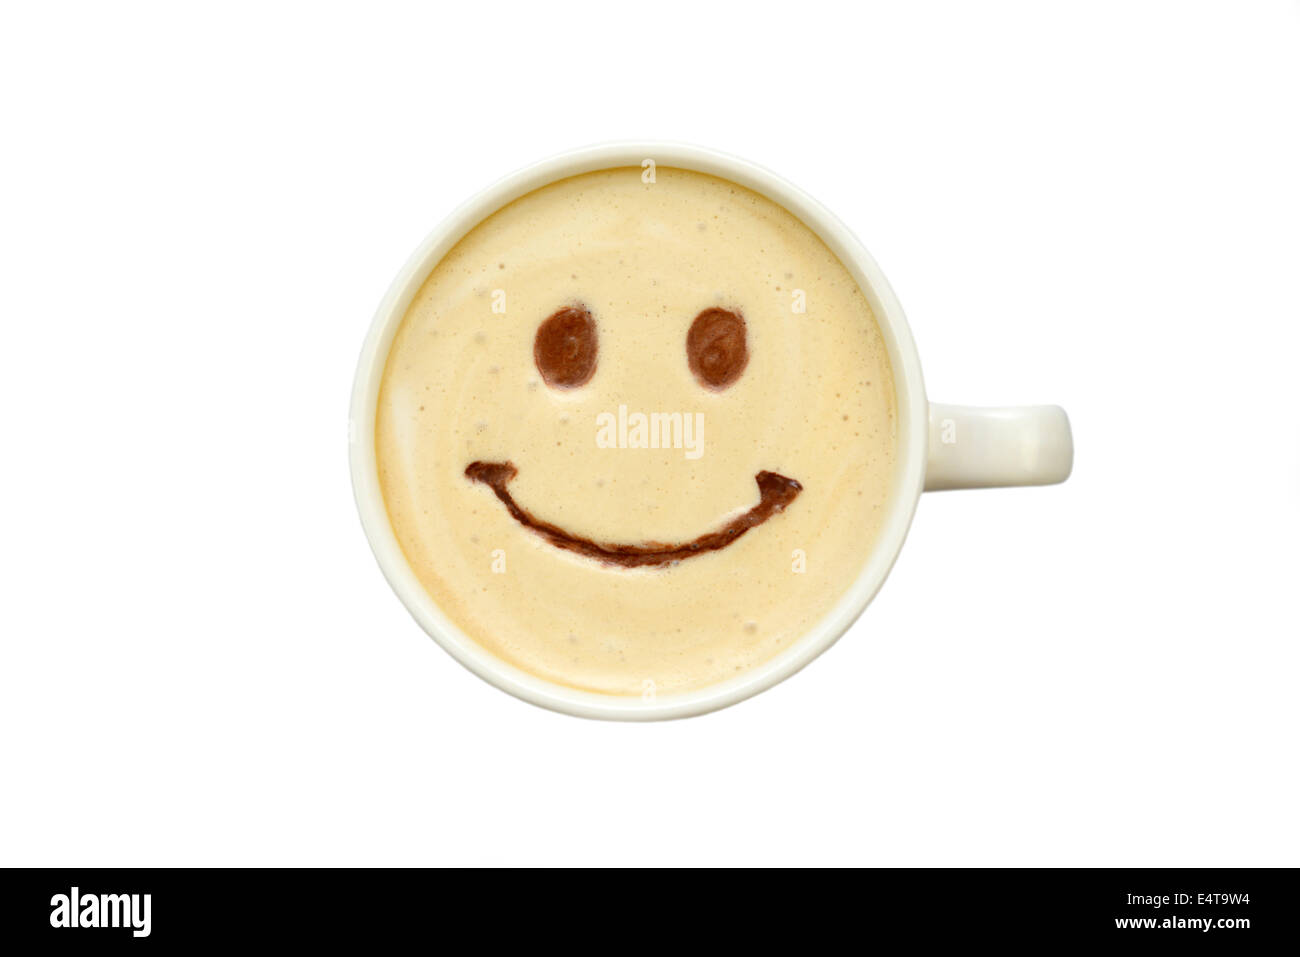 Latte art - isolato tazza di caffè con un sorriso Foto Stock